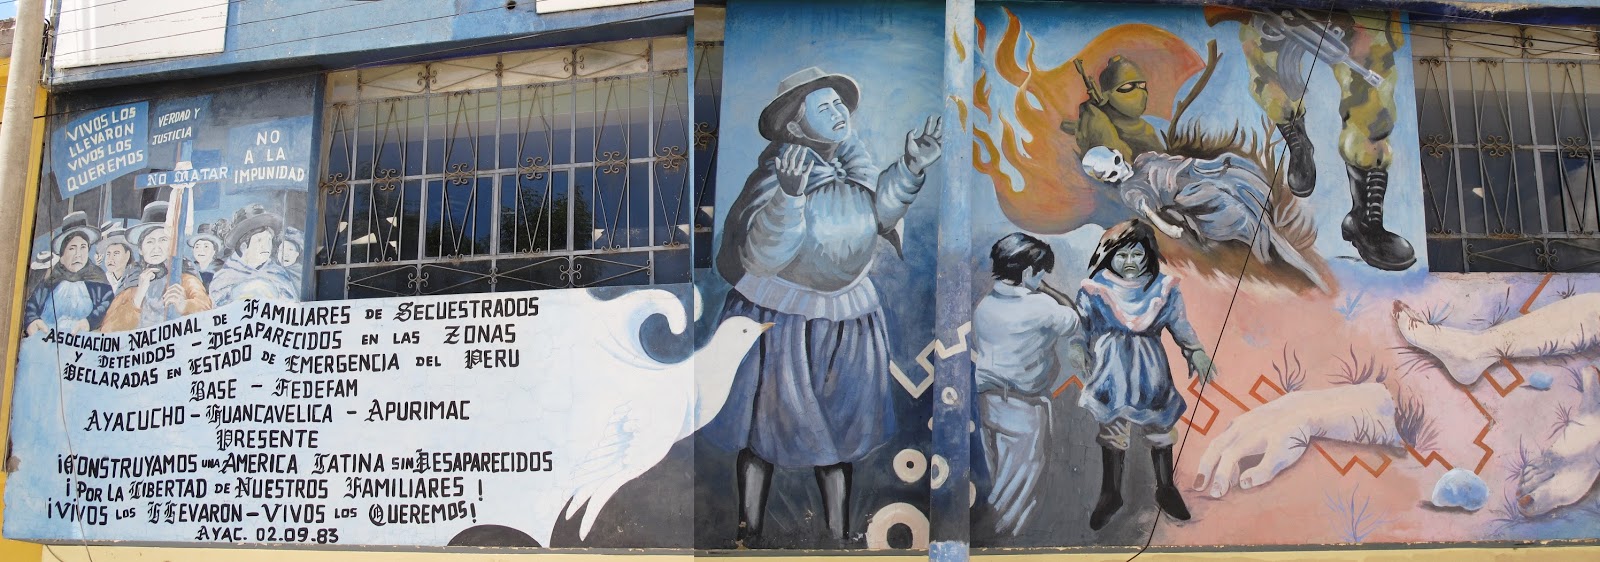 Mural Anfasep Ayacucho